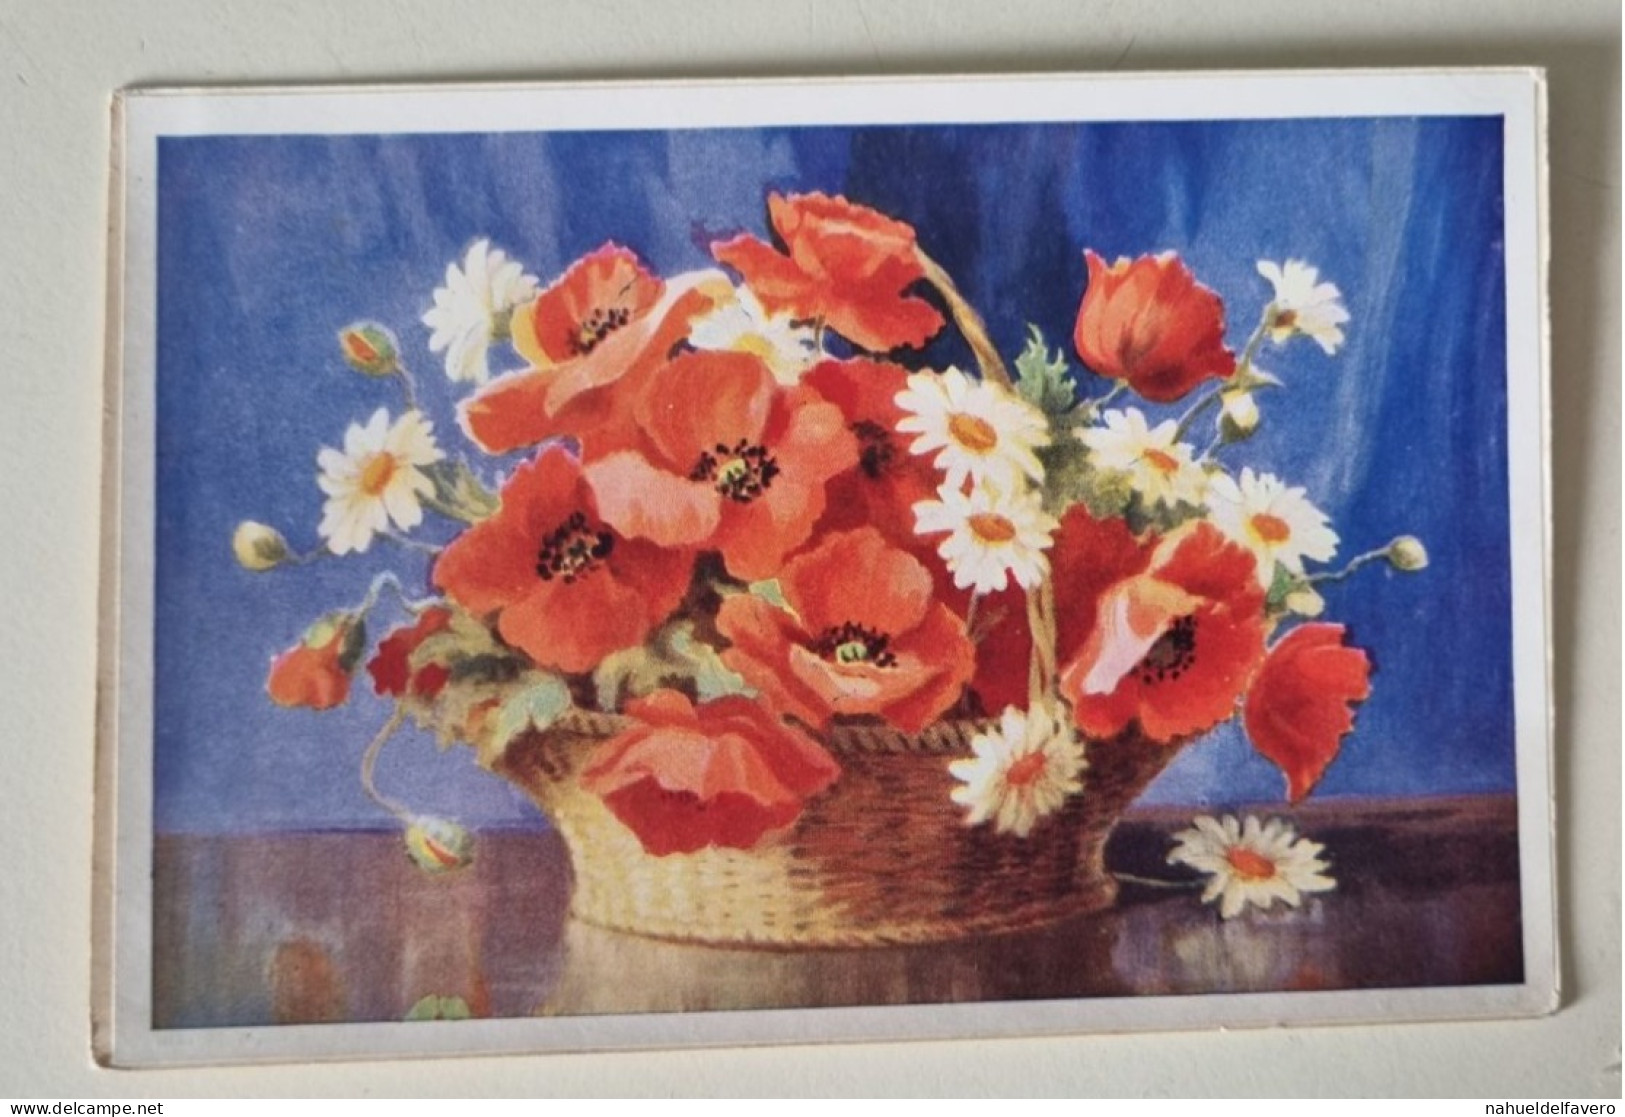 PH - PHOTO DESSINÉE - Couleur Des Photos - Fleurs Dans Un Vase - Gegenstände